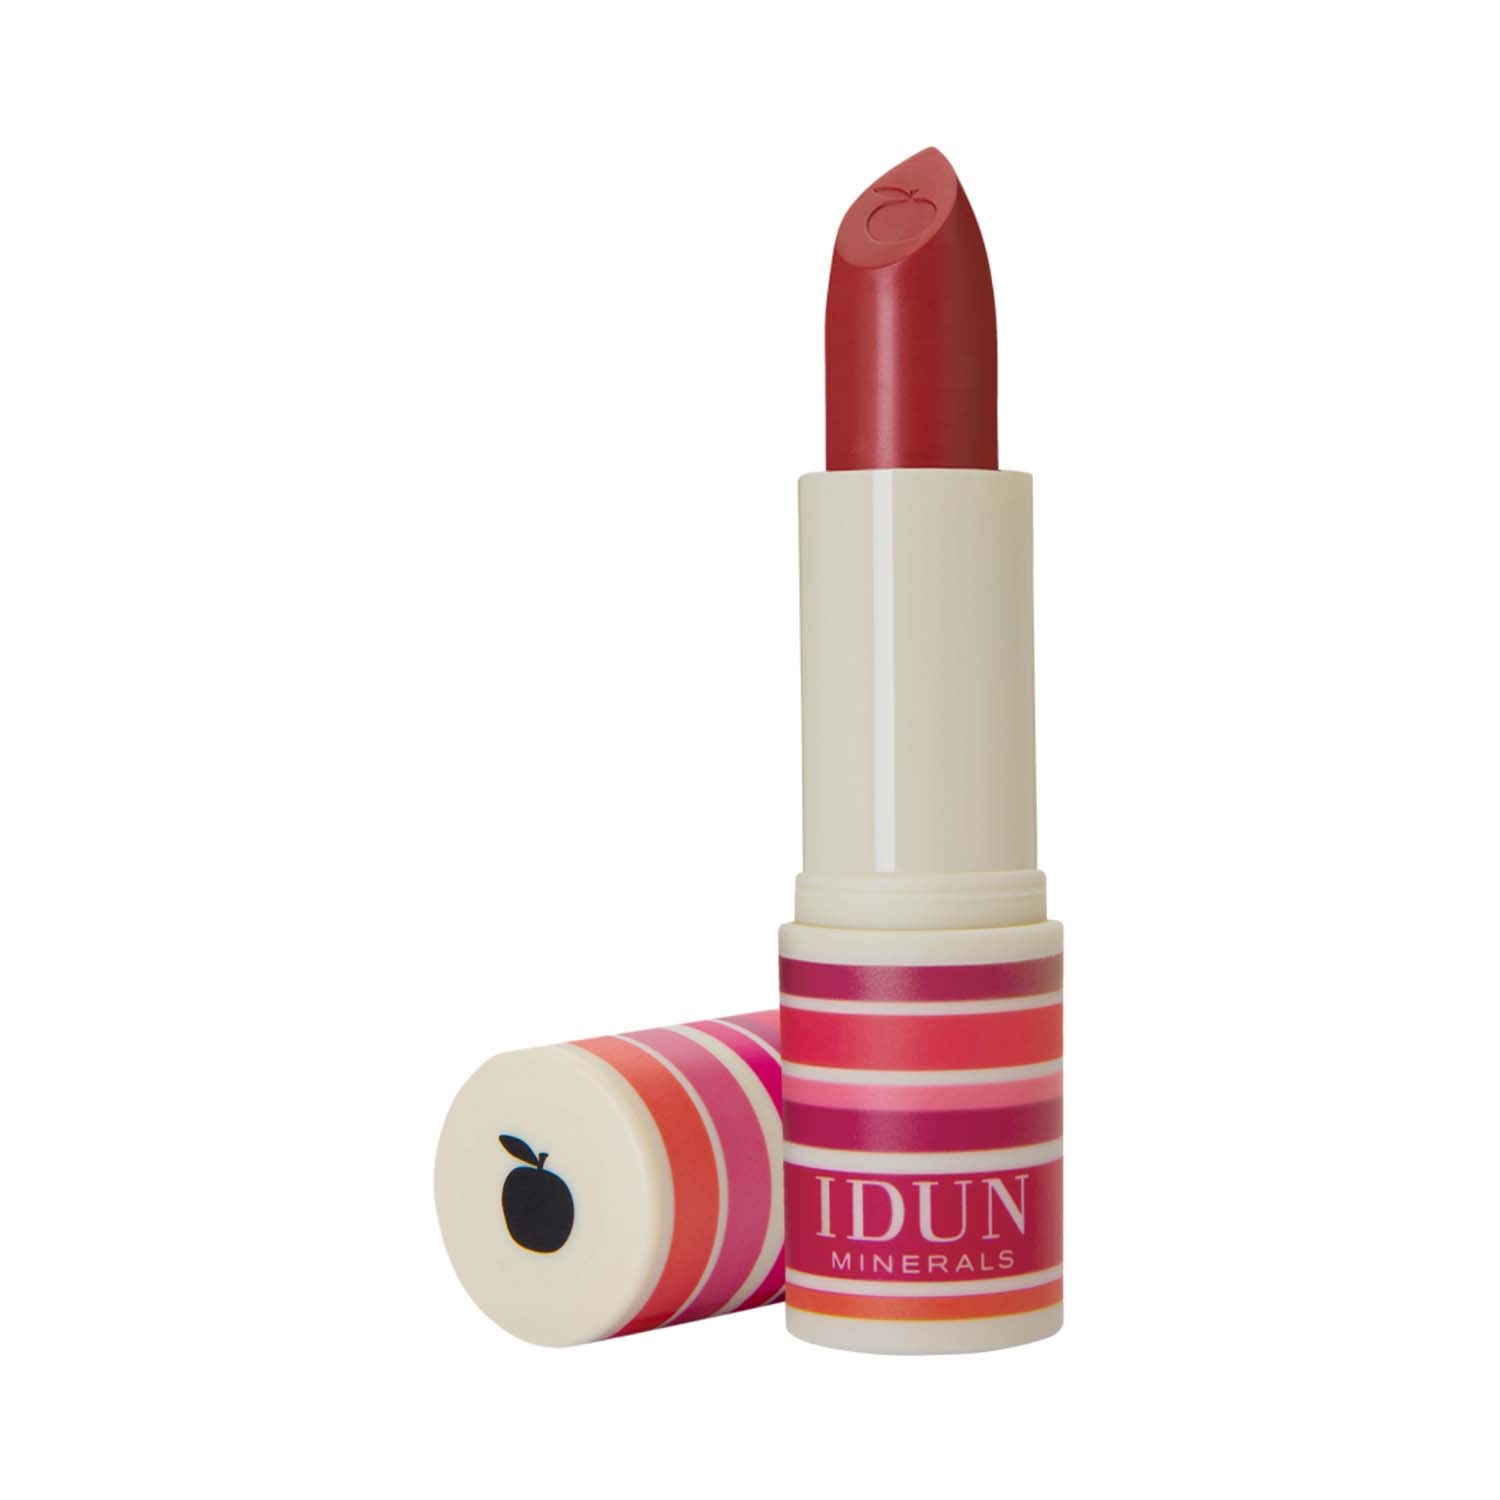 IDUN Minerals | IDUN Minerals Matte Lipstick - Körsbär (4g)